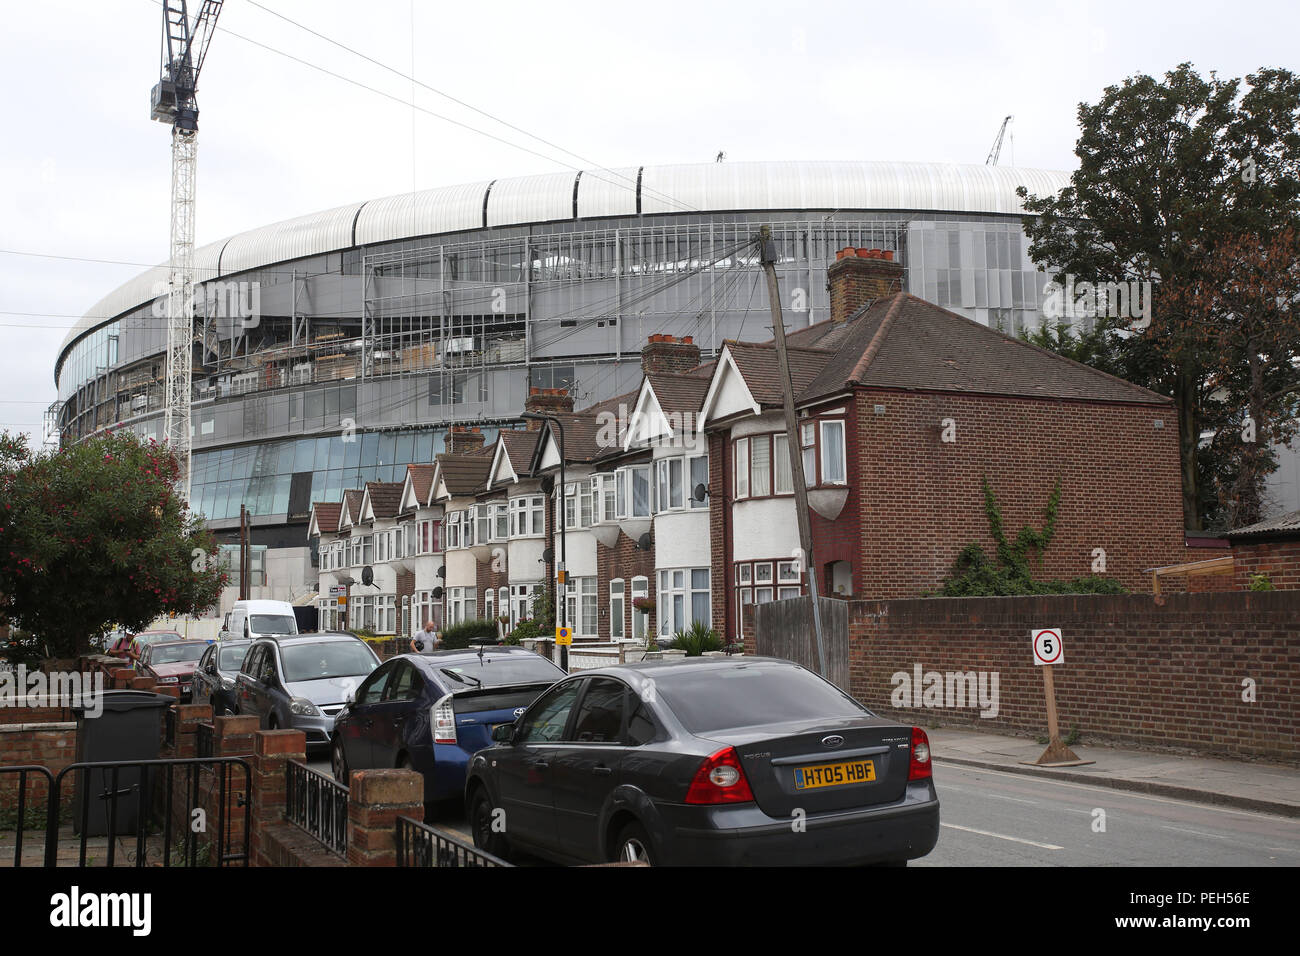 Londres, Reino Unido. El 15 de agosto de 2018. Tottenham es mudarse a su nuevo estadio ha sido retrasado al menos hasta finales de octubre, ya que el terreno no estará terminado a tiempo. Spurs ahora están explorando la posibilidad de aplazar su partido en casa contra el Manchester City el 28 de Octubre como su hogar temporal Wembley ya está reservado en esa fecha. Los £850 millones de tierra había sido originalmente esperaba que estuviera listo para el enfrentamiento con el Liverpool el 15 de septiembre. Crédito: Nigel Bowles/Alamy Live News Foto de stock